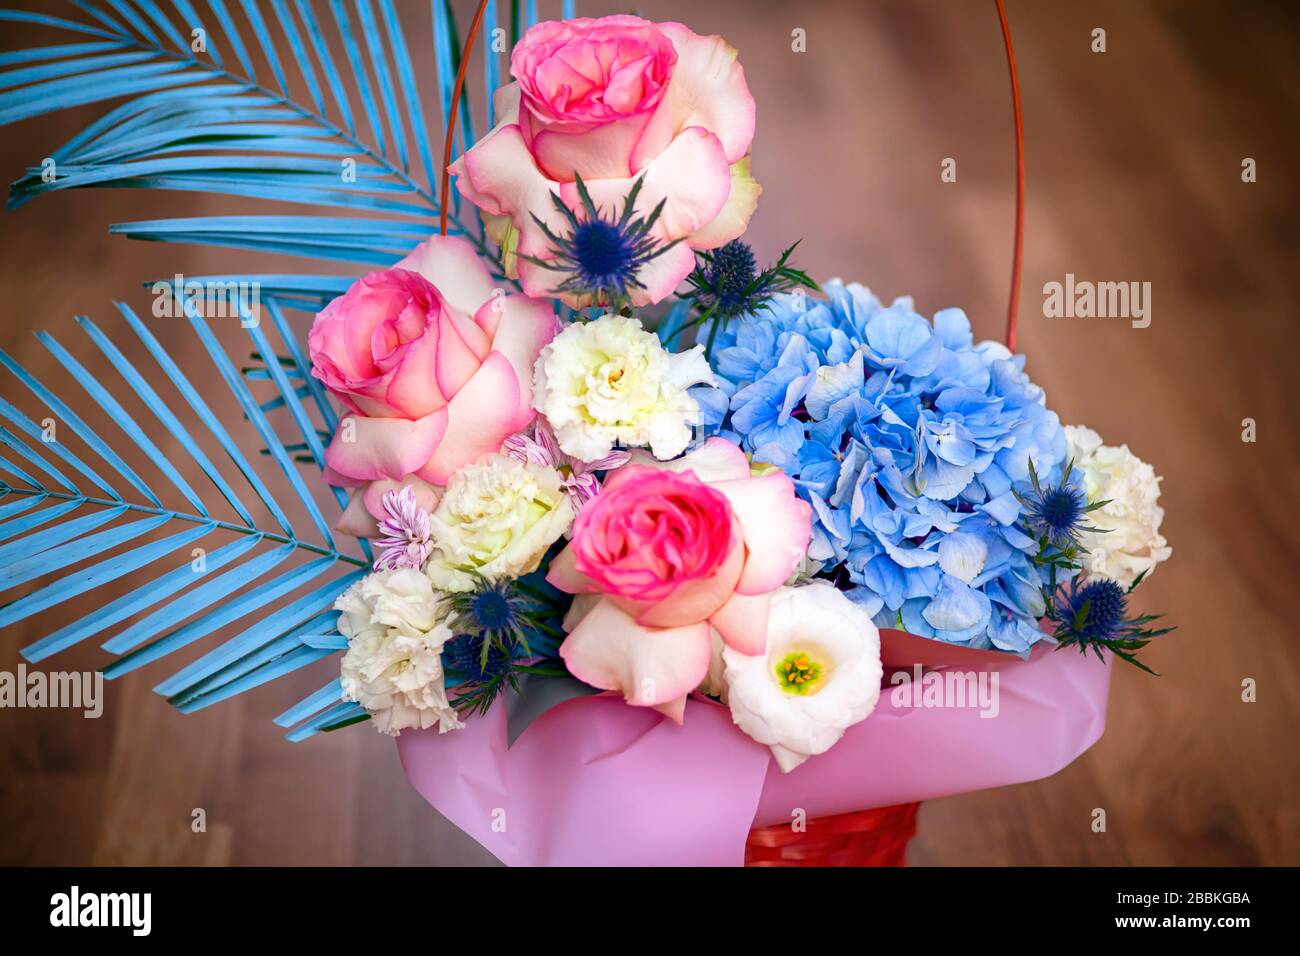 Bella composizione floreale con rose, eustoma e hydrangea nel cesto. Sfondo in legno. Foto Stock